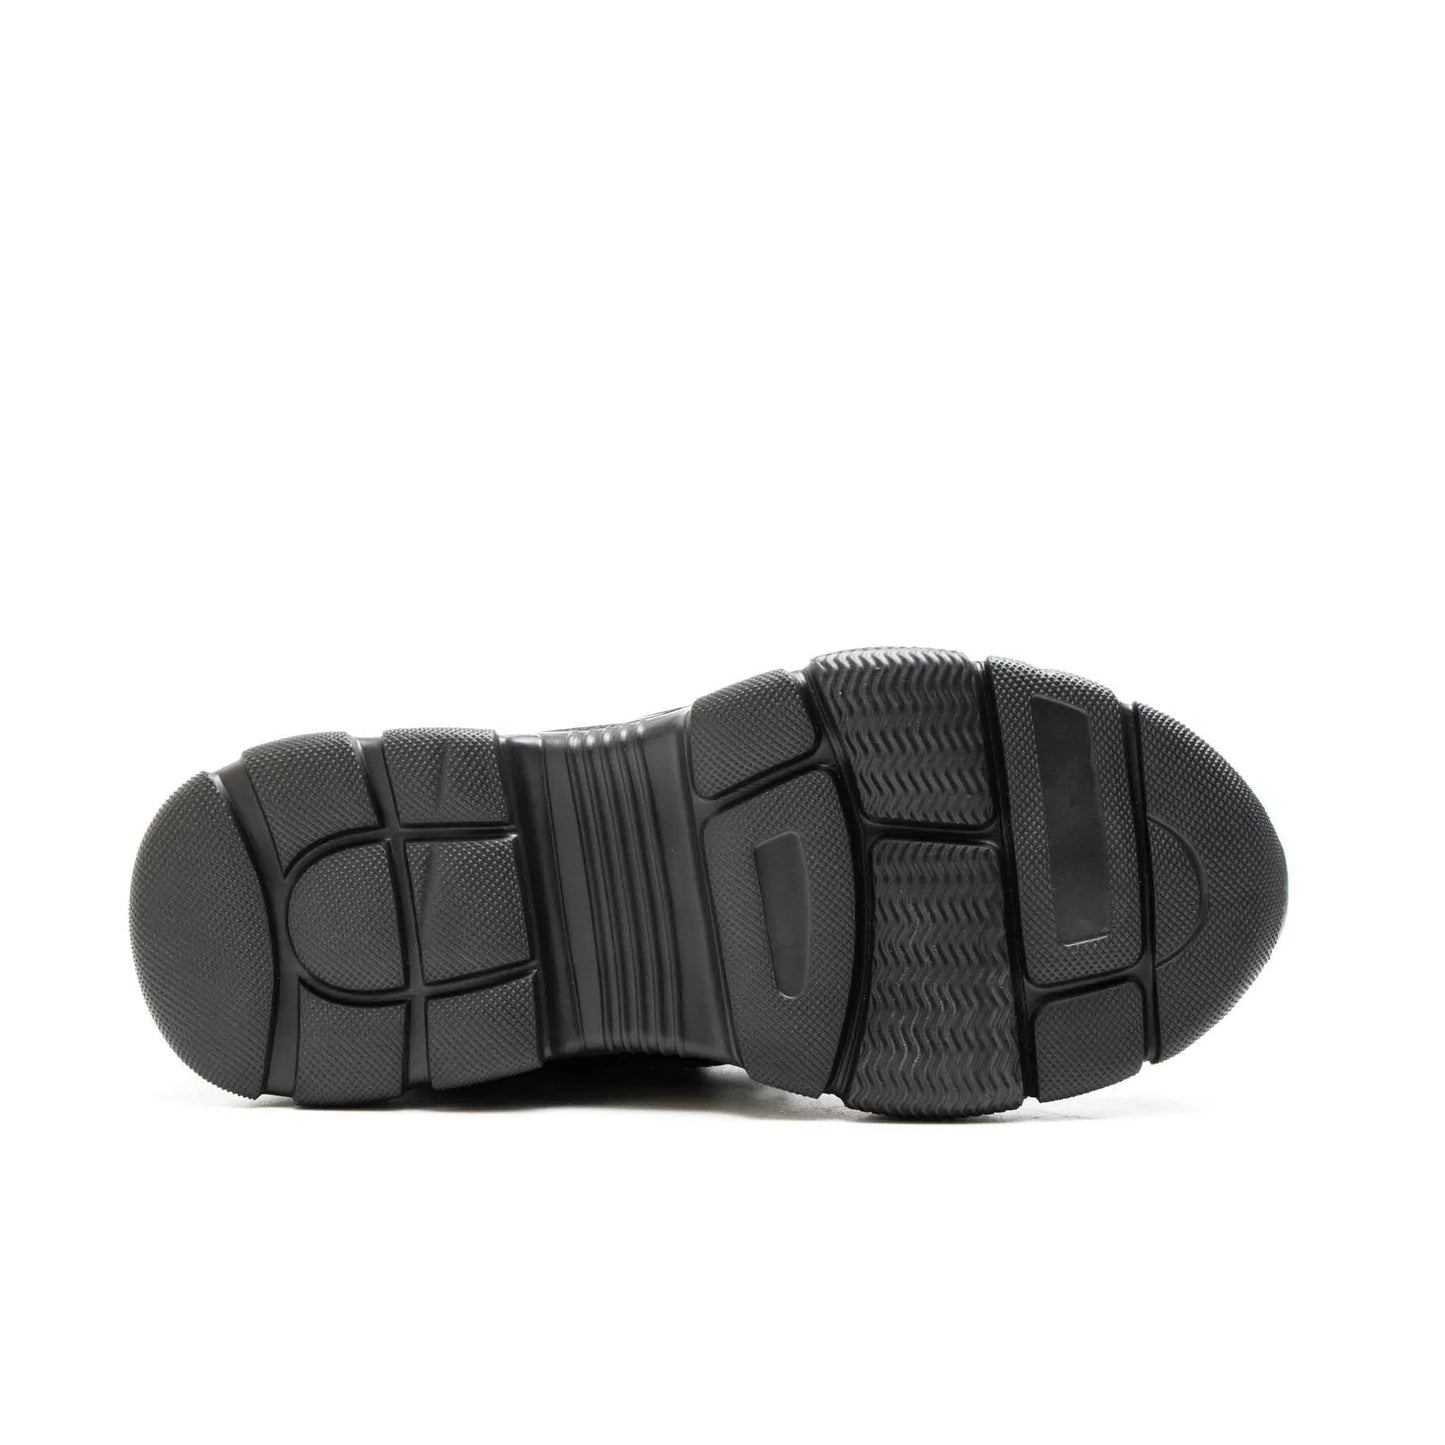 Ironfeet Baller - Chaussures de sécurité indestructibles